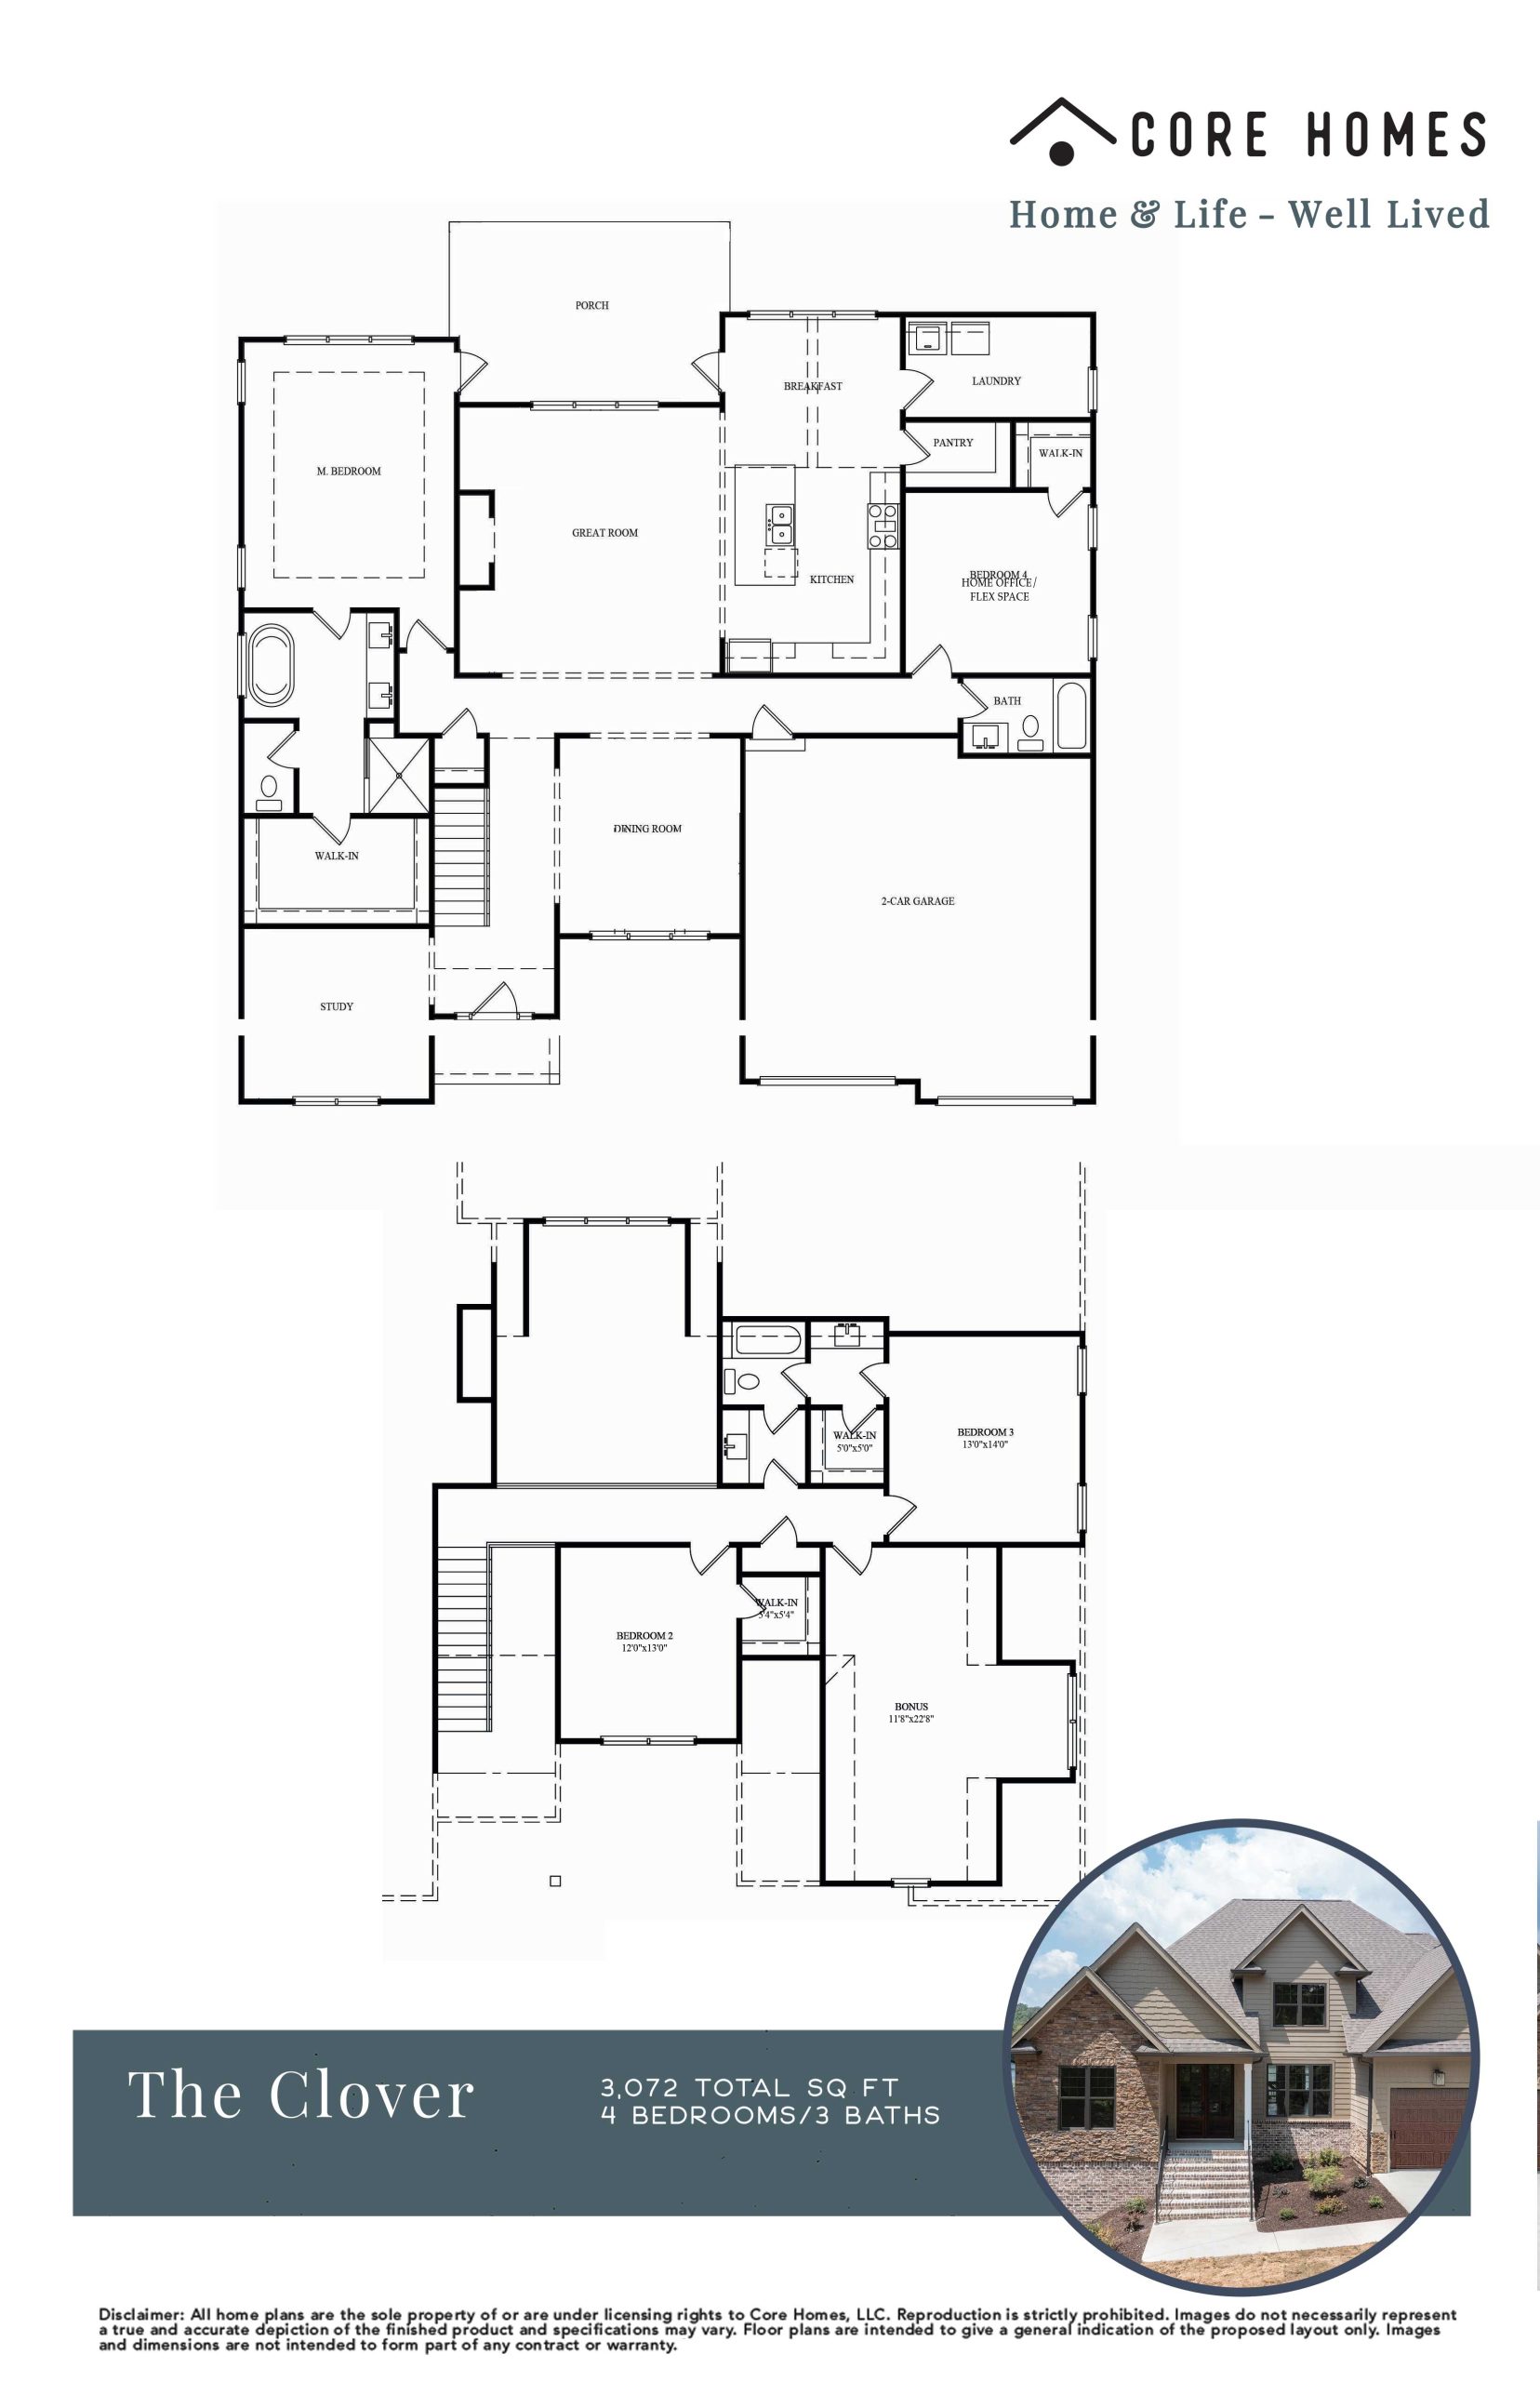 Clover floor plan Core Homes